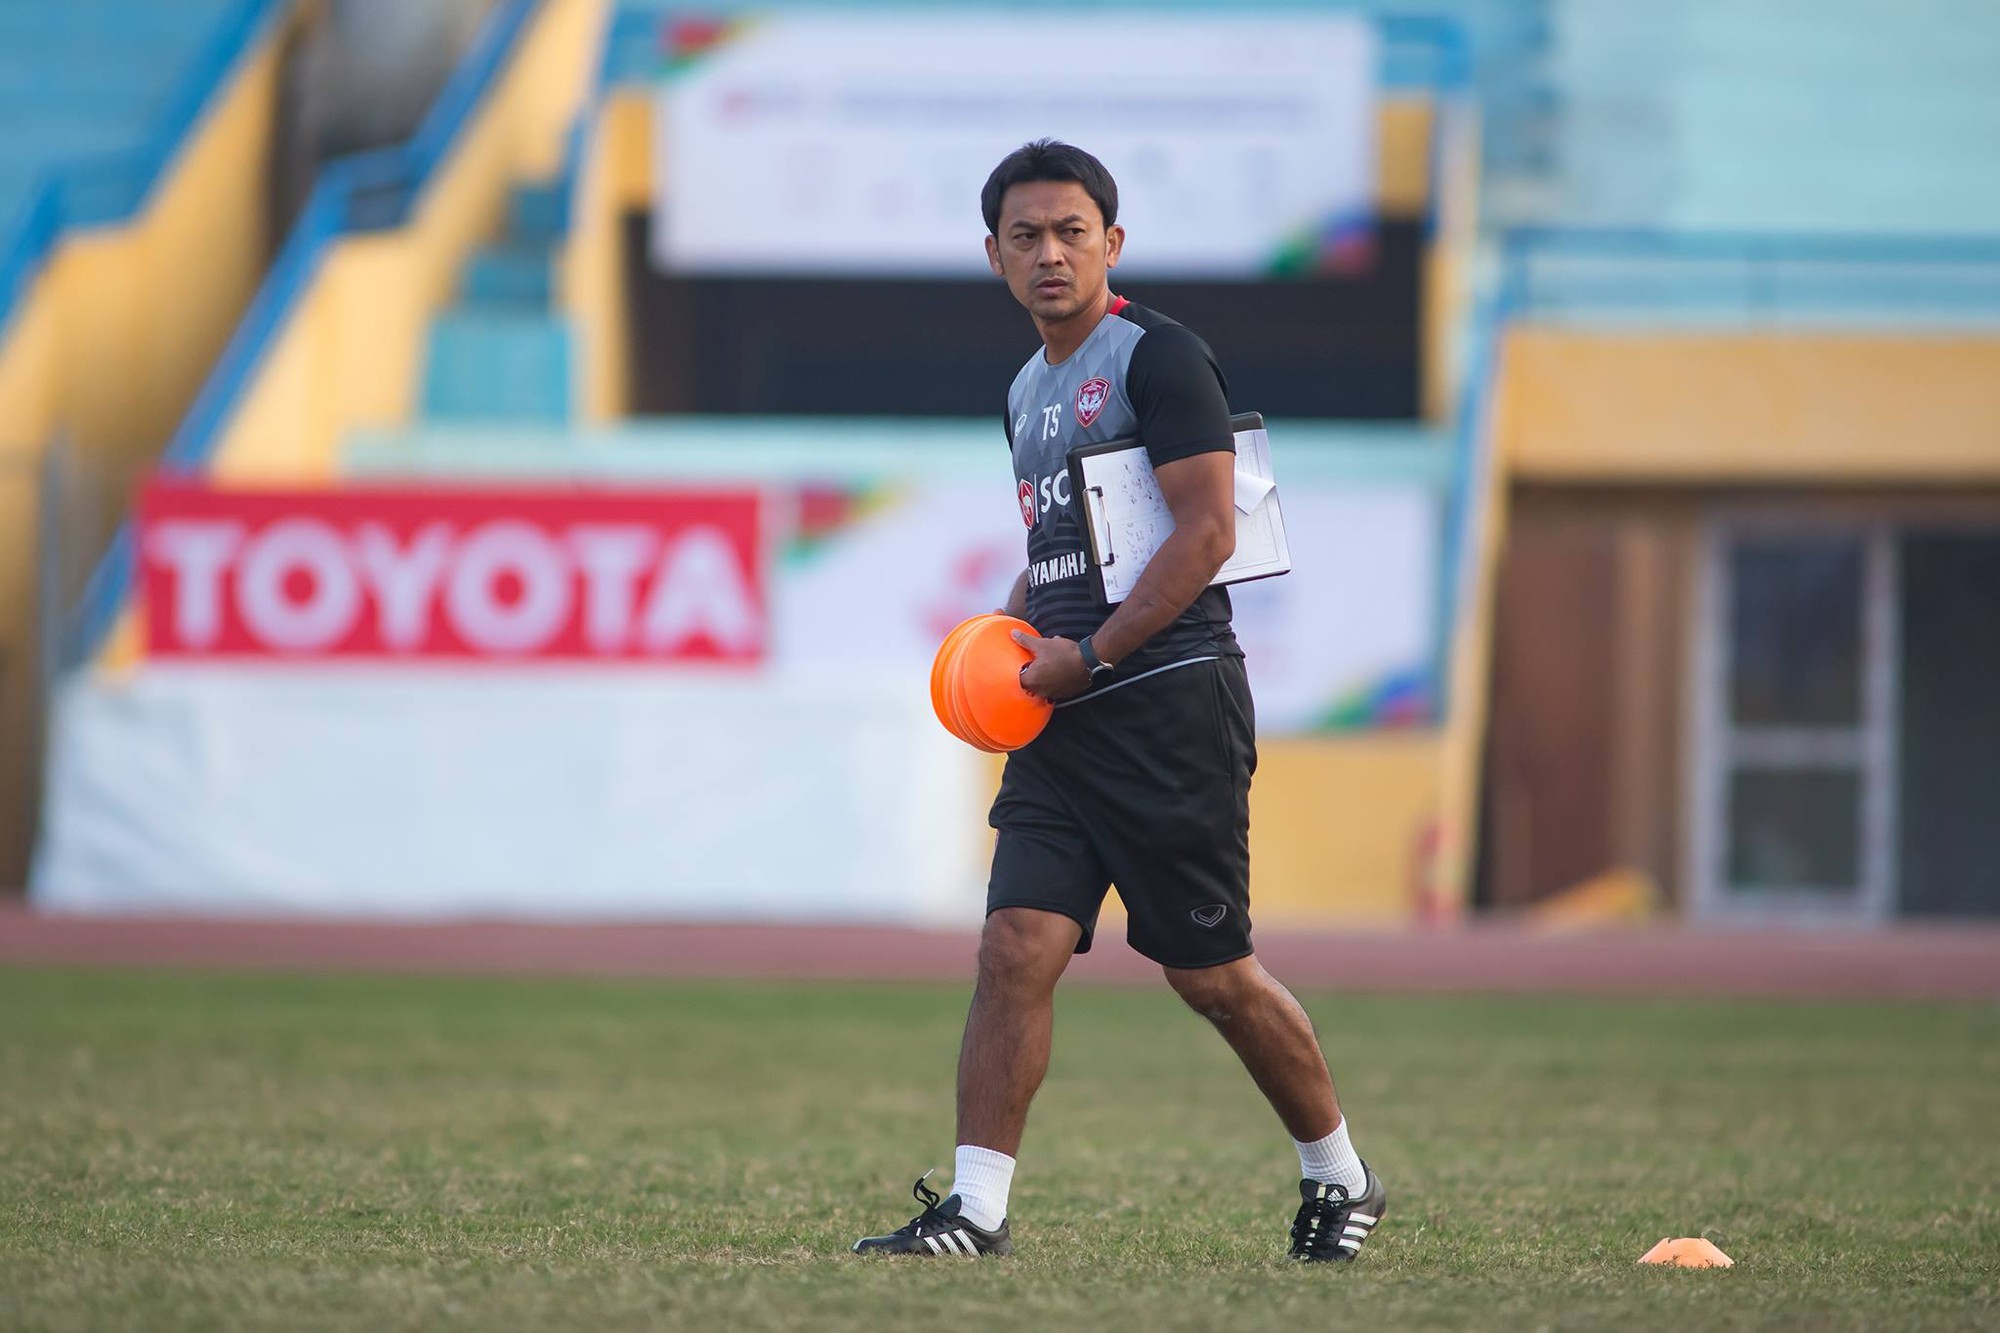 HLV Totchtawan Sripan đánh giá cao chất lượng của Sanna Khánh Hòa BVN, ông khá khiêm tốn khi nói về sức mạnh của Muangthong United.